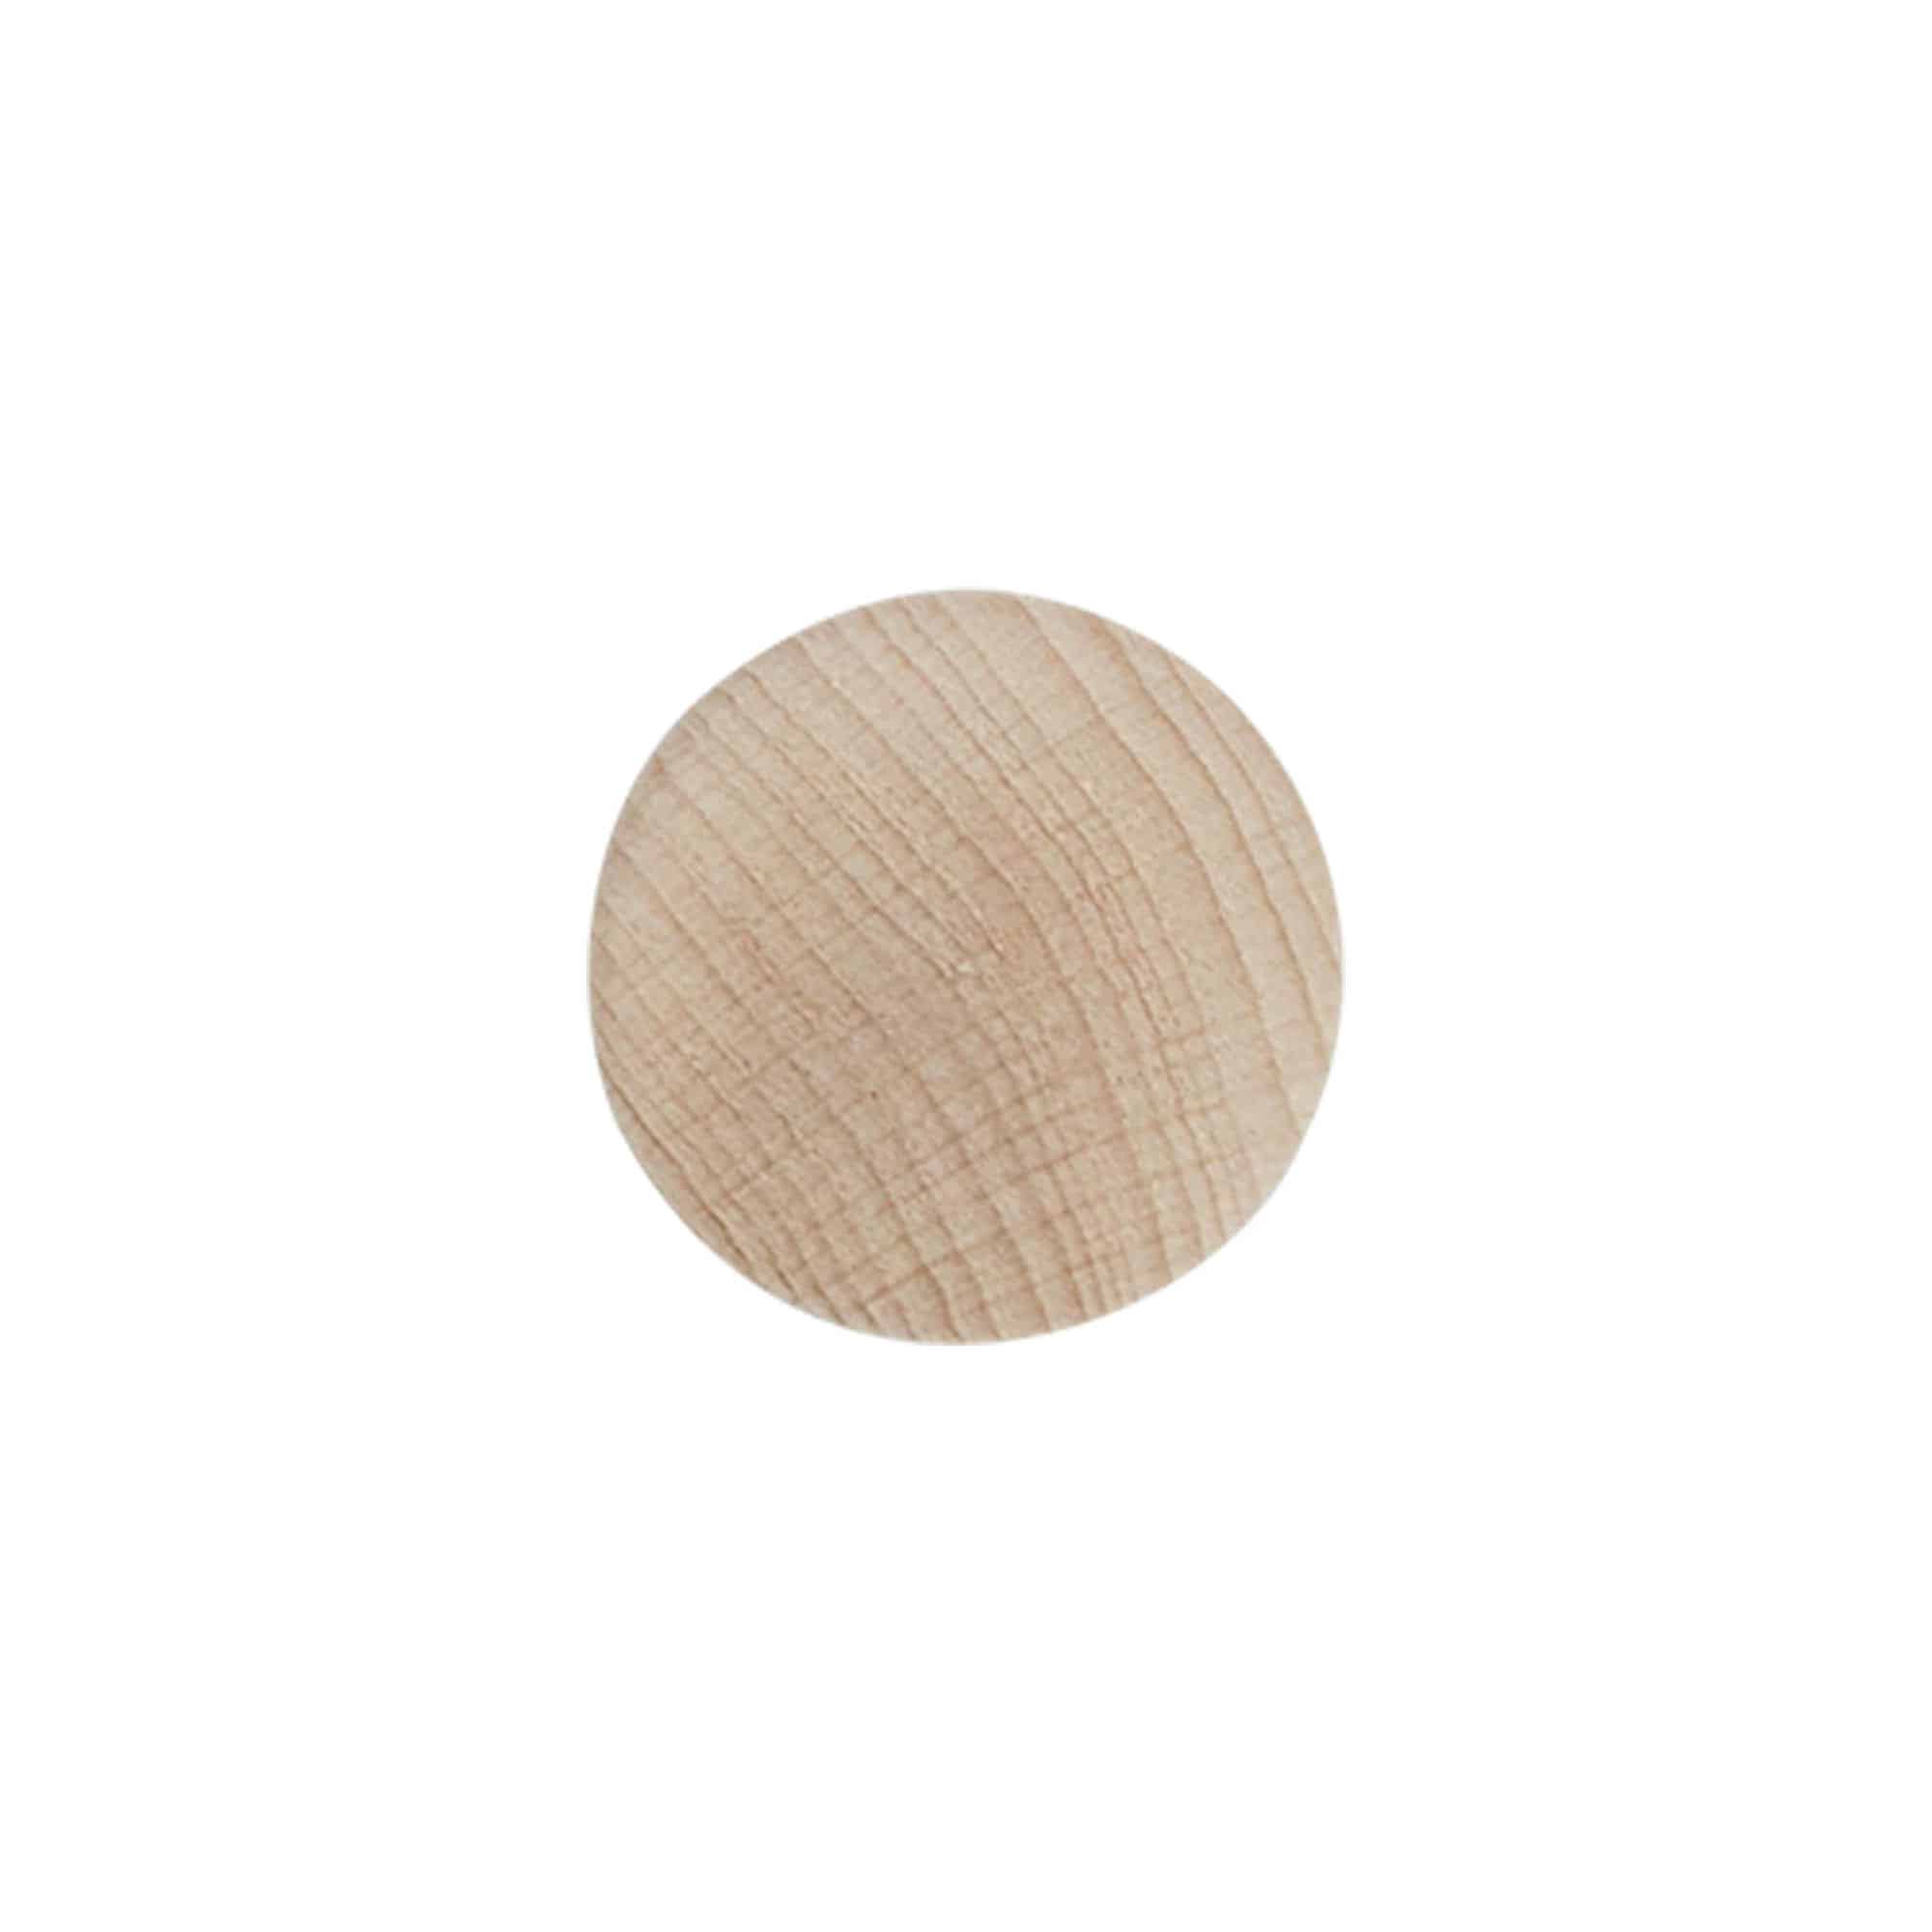 Dopkurk, 21,5 mm, hout, voor monding: kurk